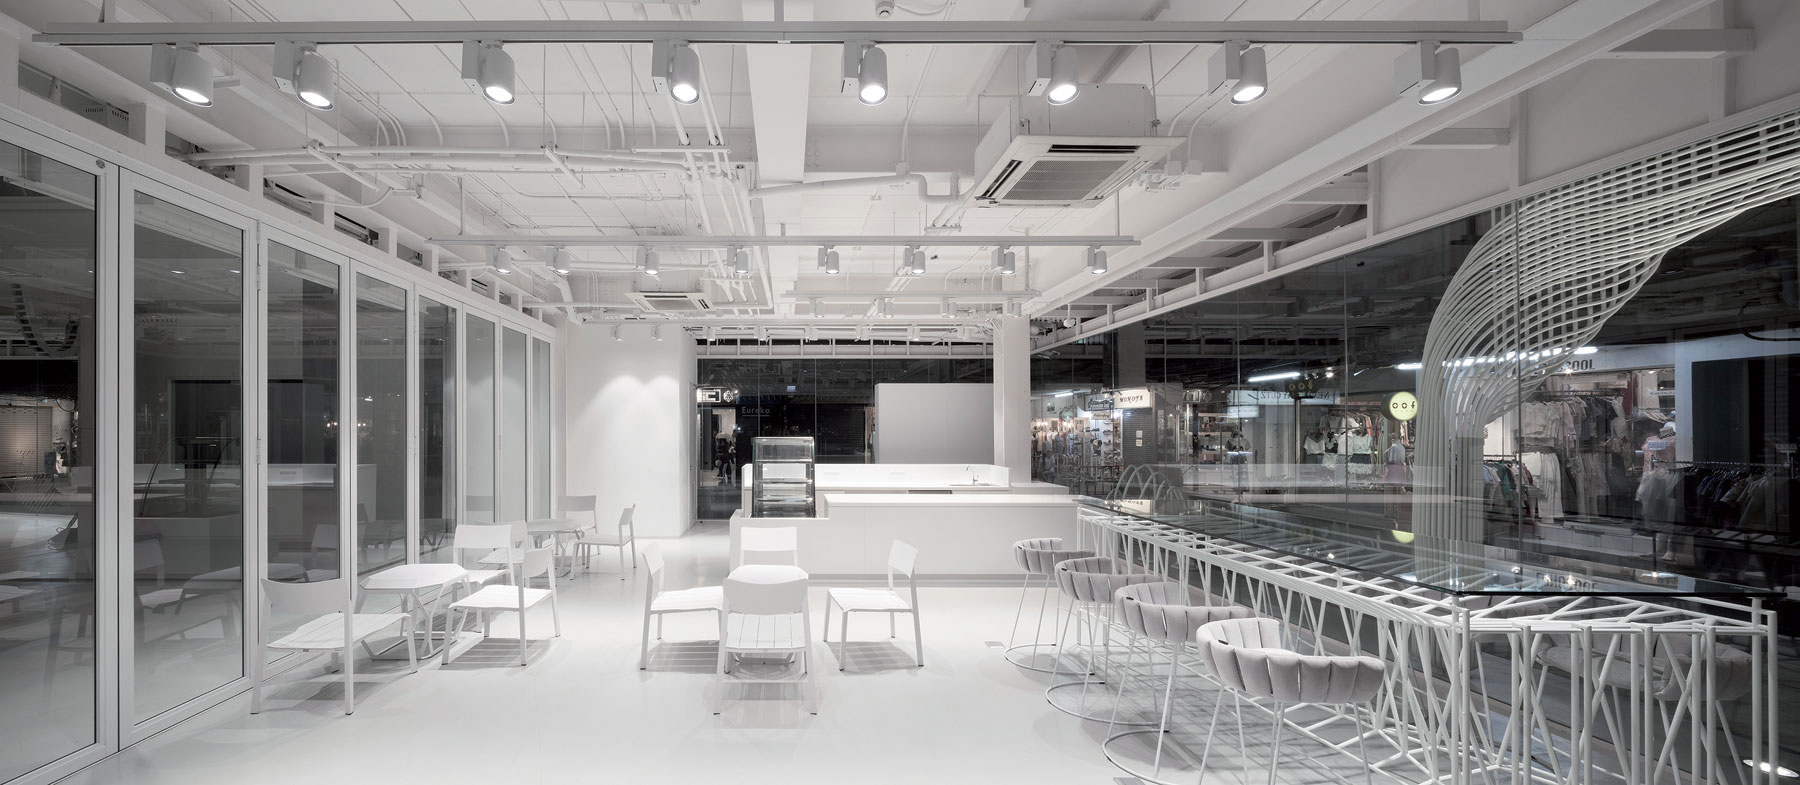 9 Now26 Architectkidd Interior Cafe   Spaceshift Studio